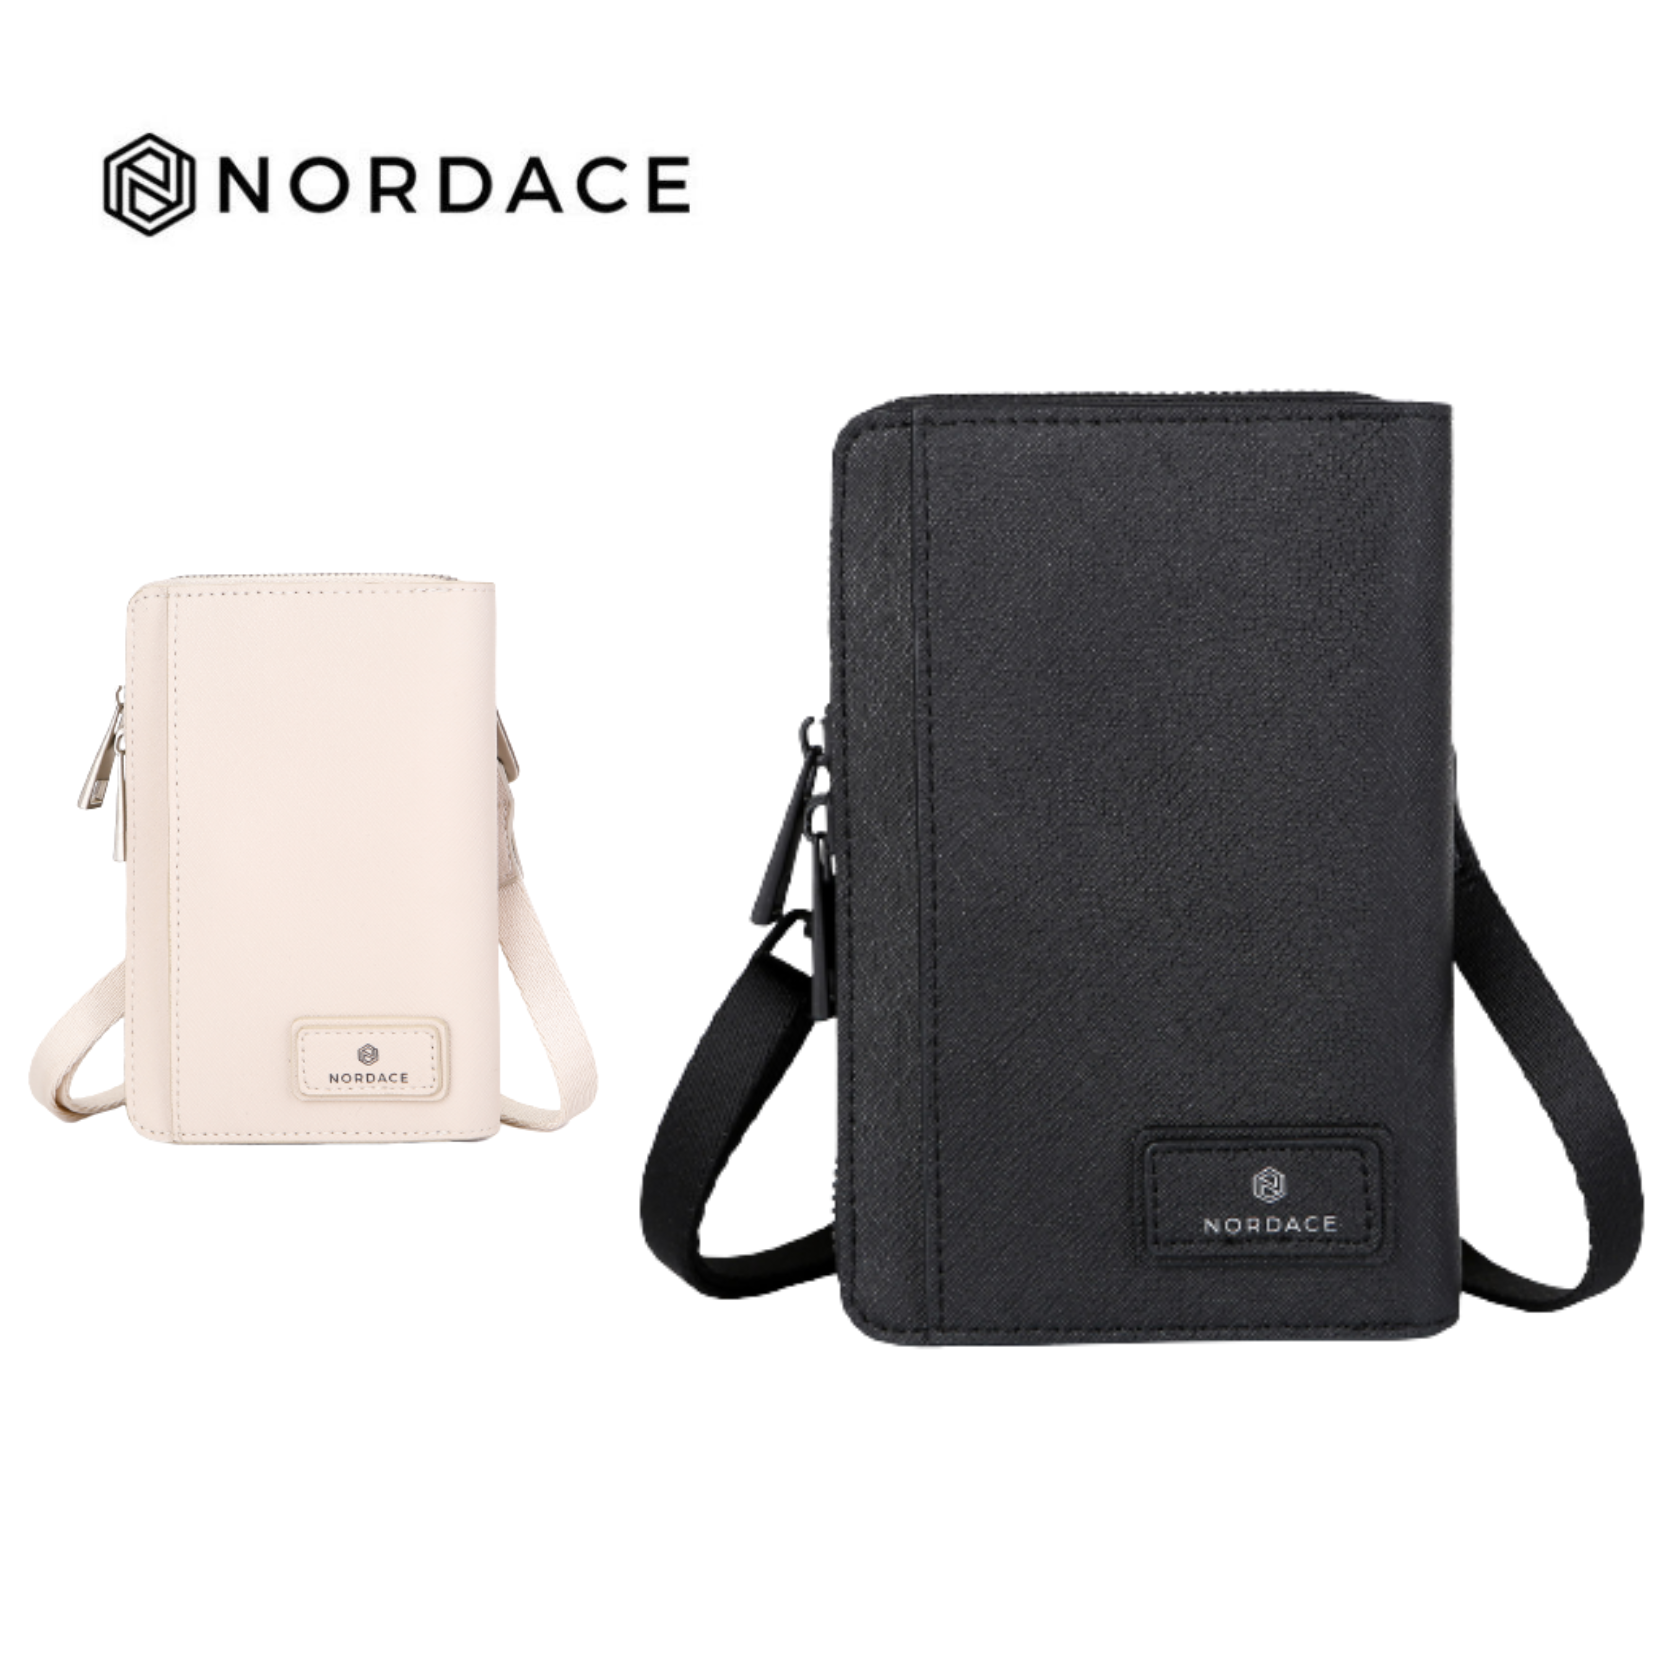 Nordace Siena II 護照包 護照夾 護照套 證件包 旅遊收納 隨身包 收納包 多功能 兩色可選-黑色